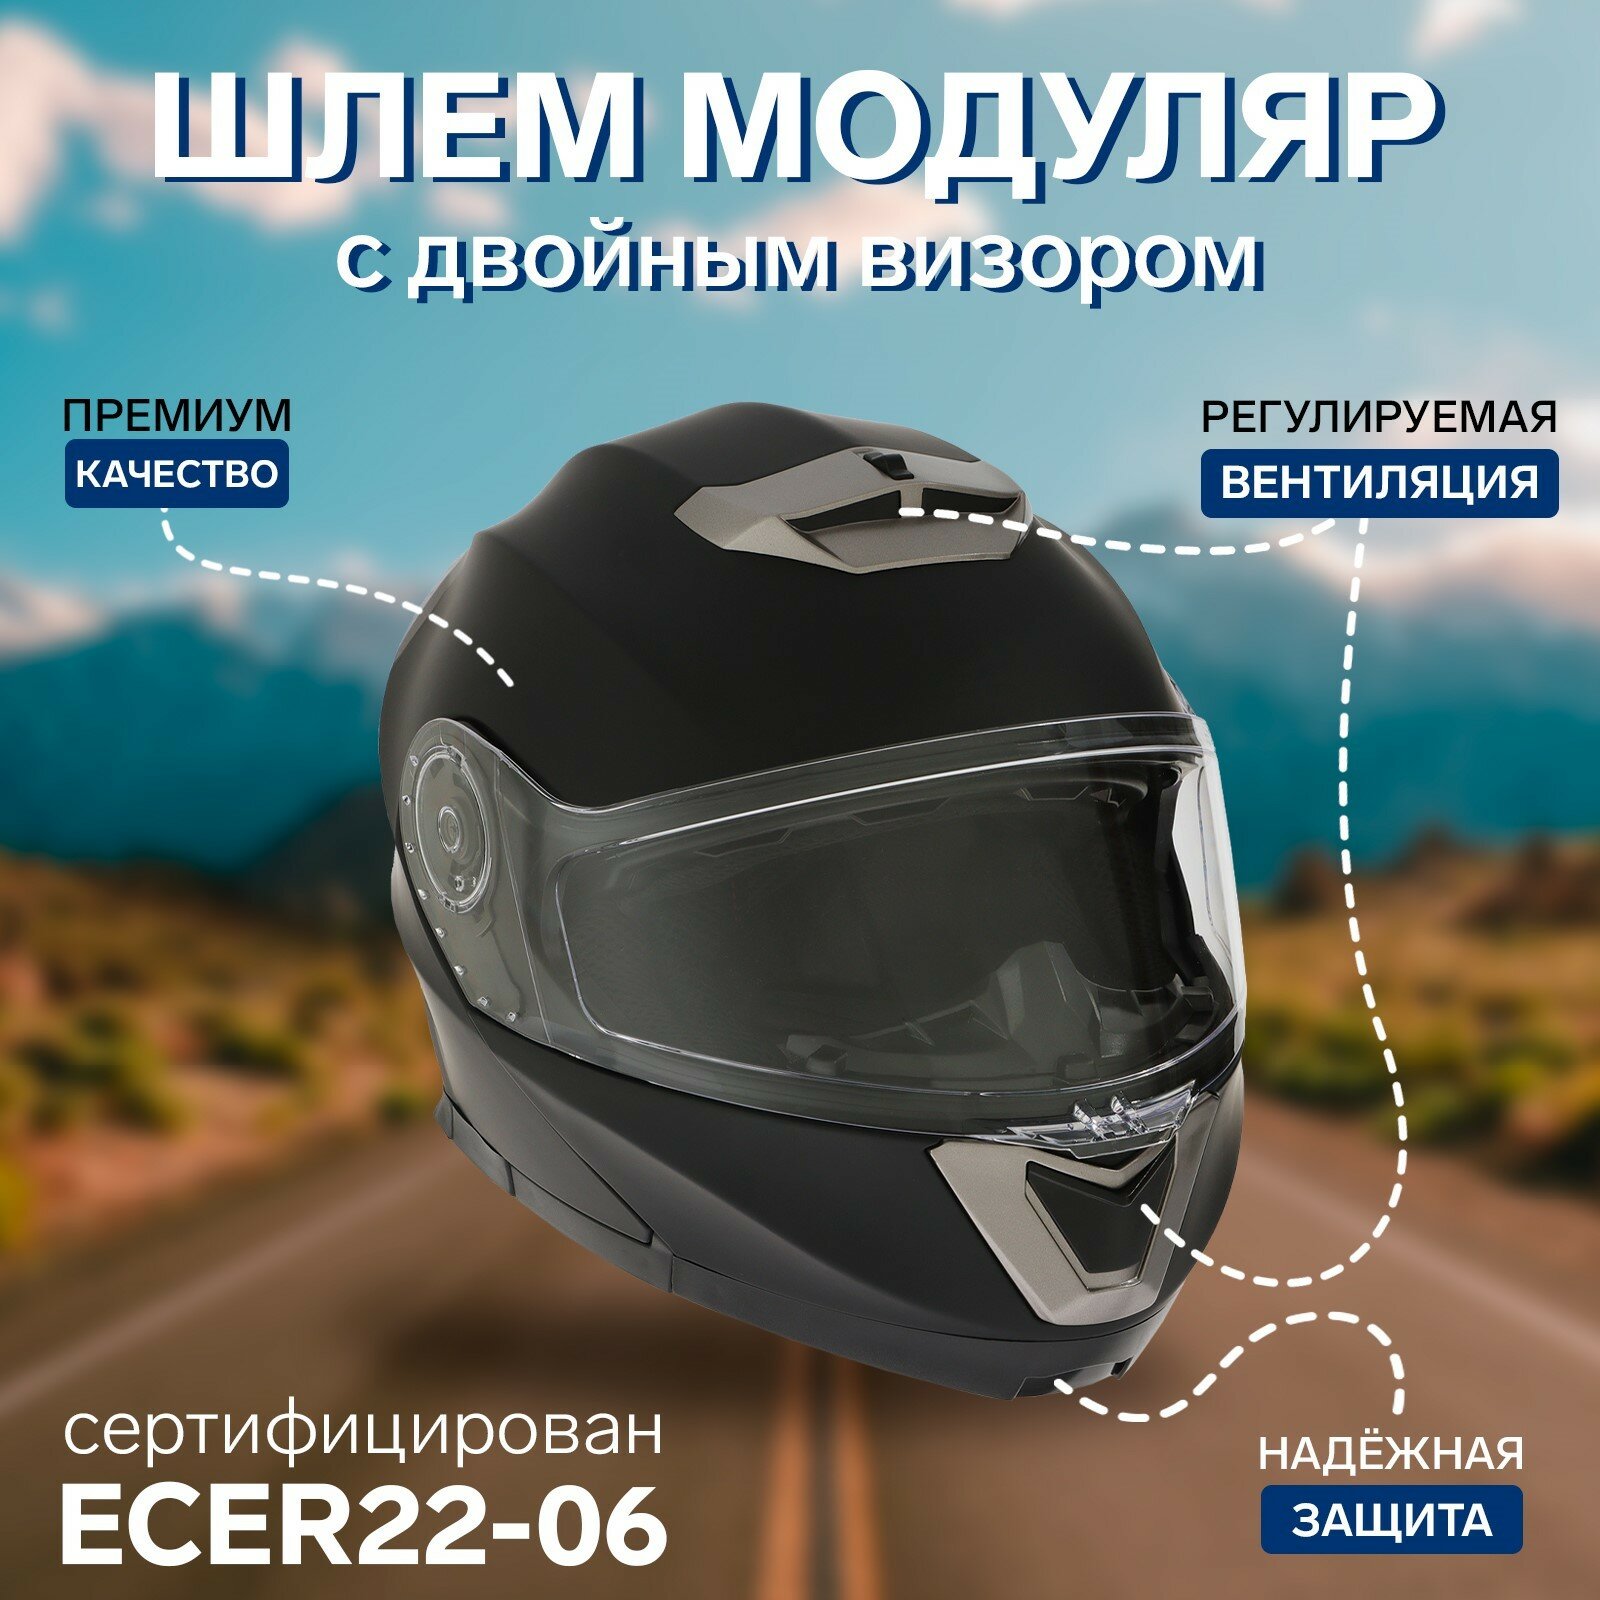 Шлем модуляр с двумя визорами, размер XL (60-61), модель - BLD-160E, черный матовый